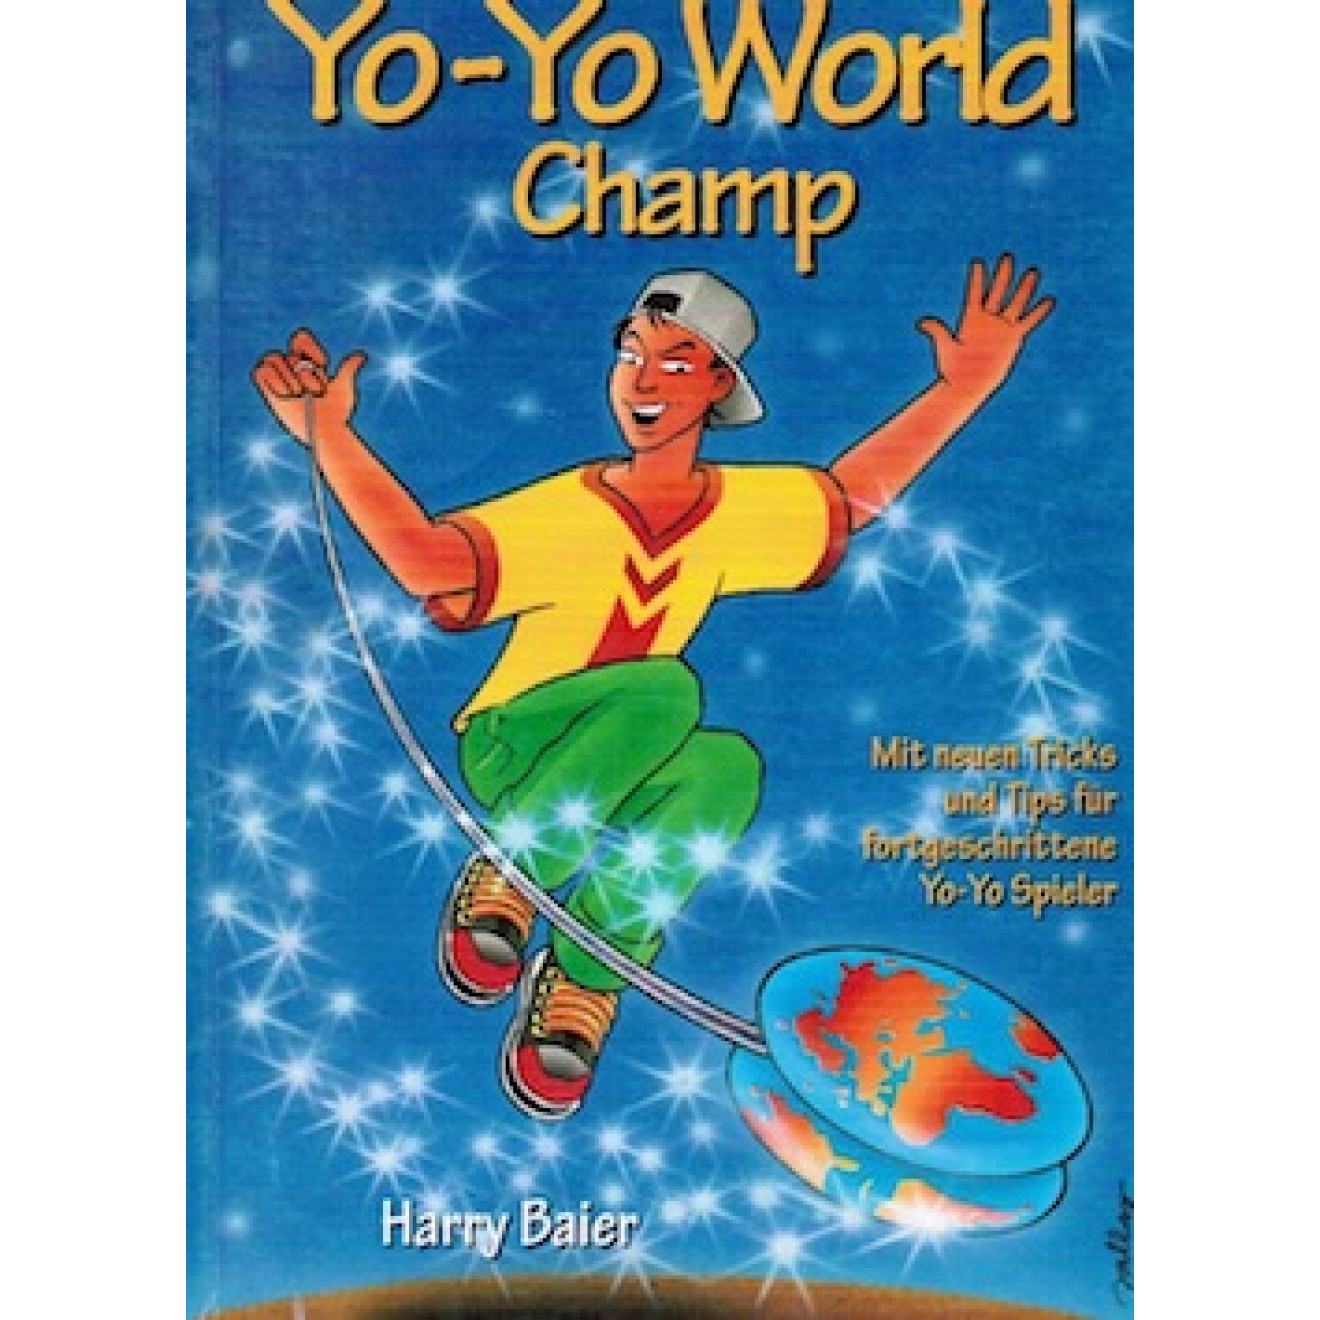 Yo-Yo World Champ